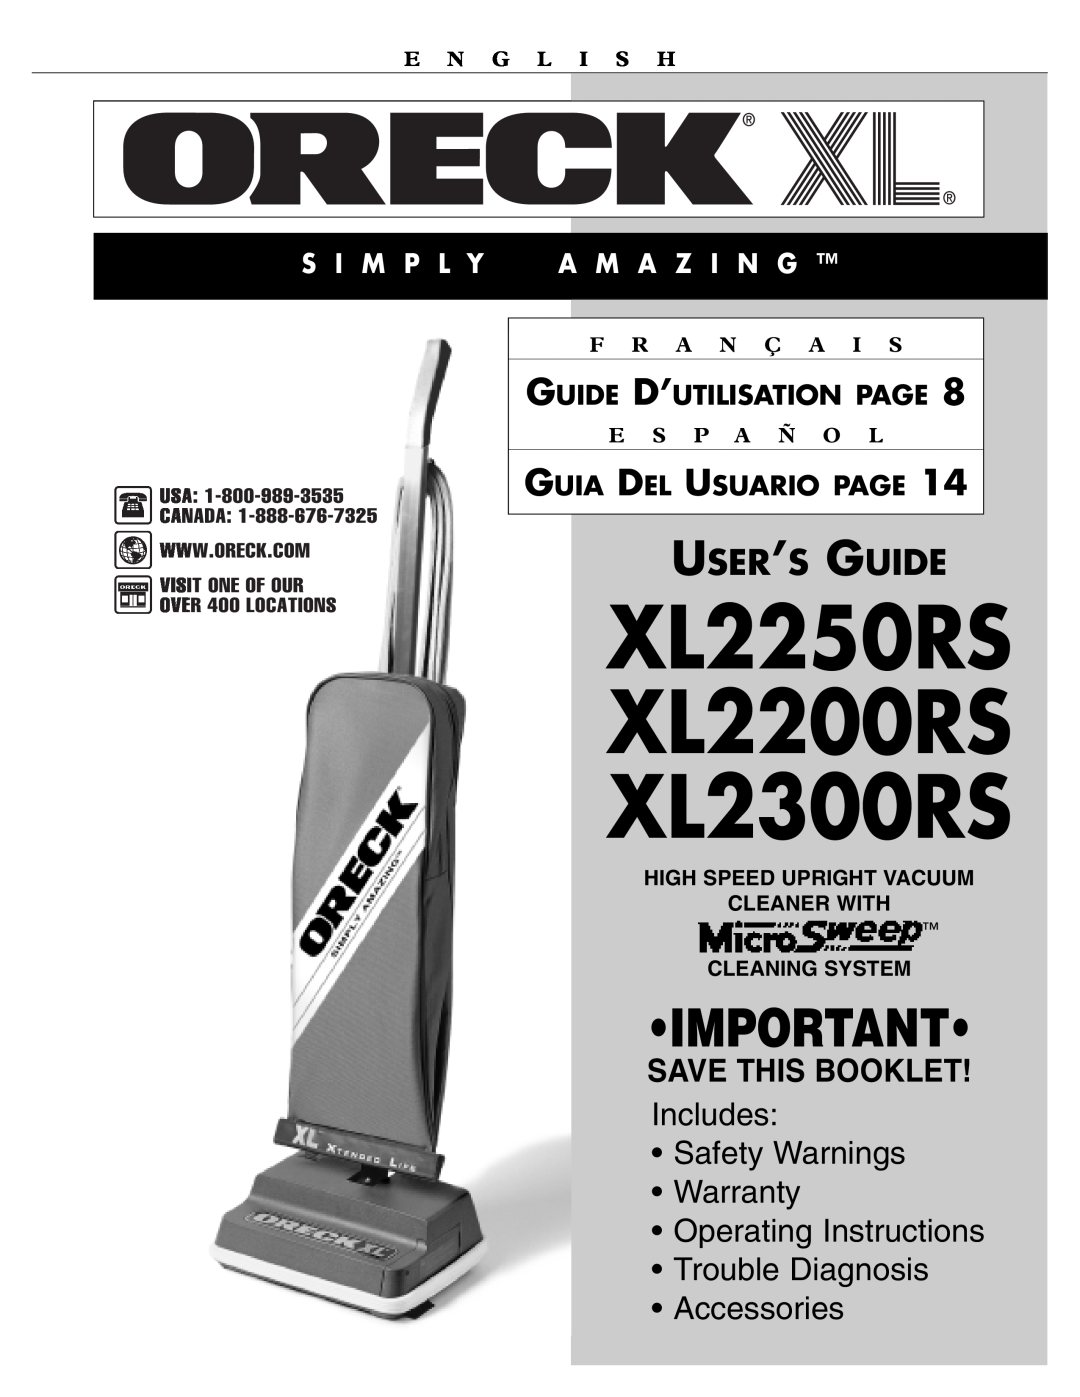 Oreck XL2300RS warranty S I M P L Y A M A Z I N G, Guide D’Utilisation Page, Guia Del Usuario Page, E N G L I S H 